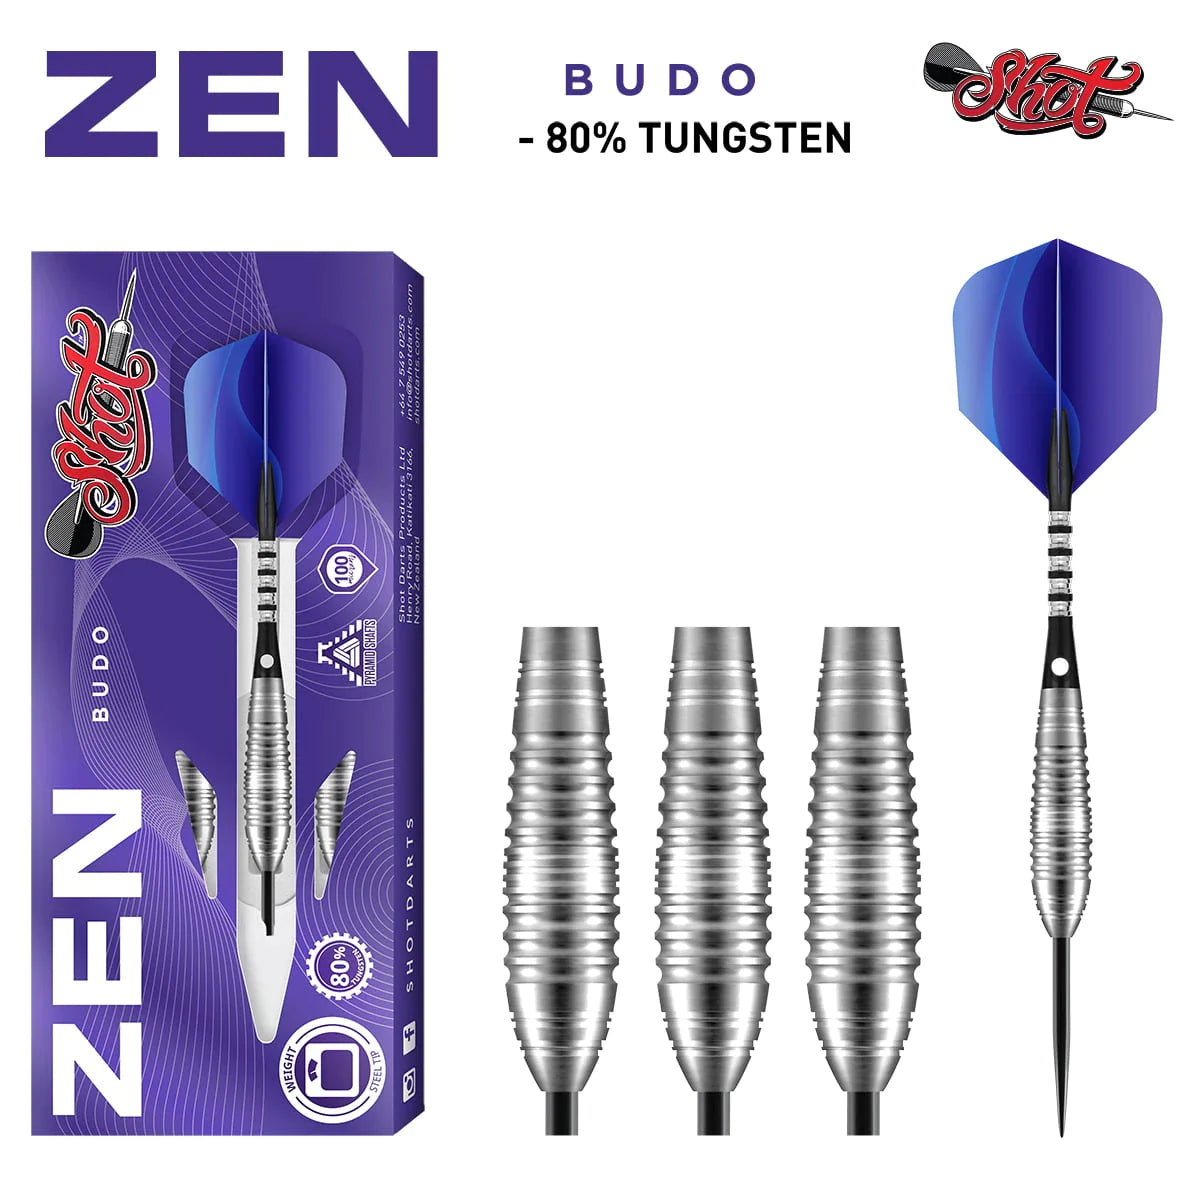 Shot Zen Budo 26g 80% Tungsten Steel Tip Darts